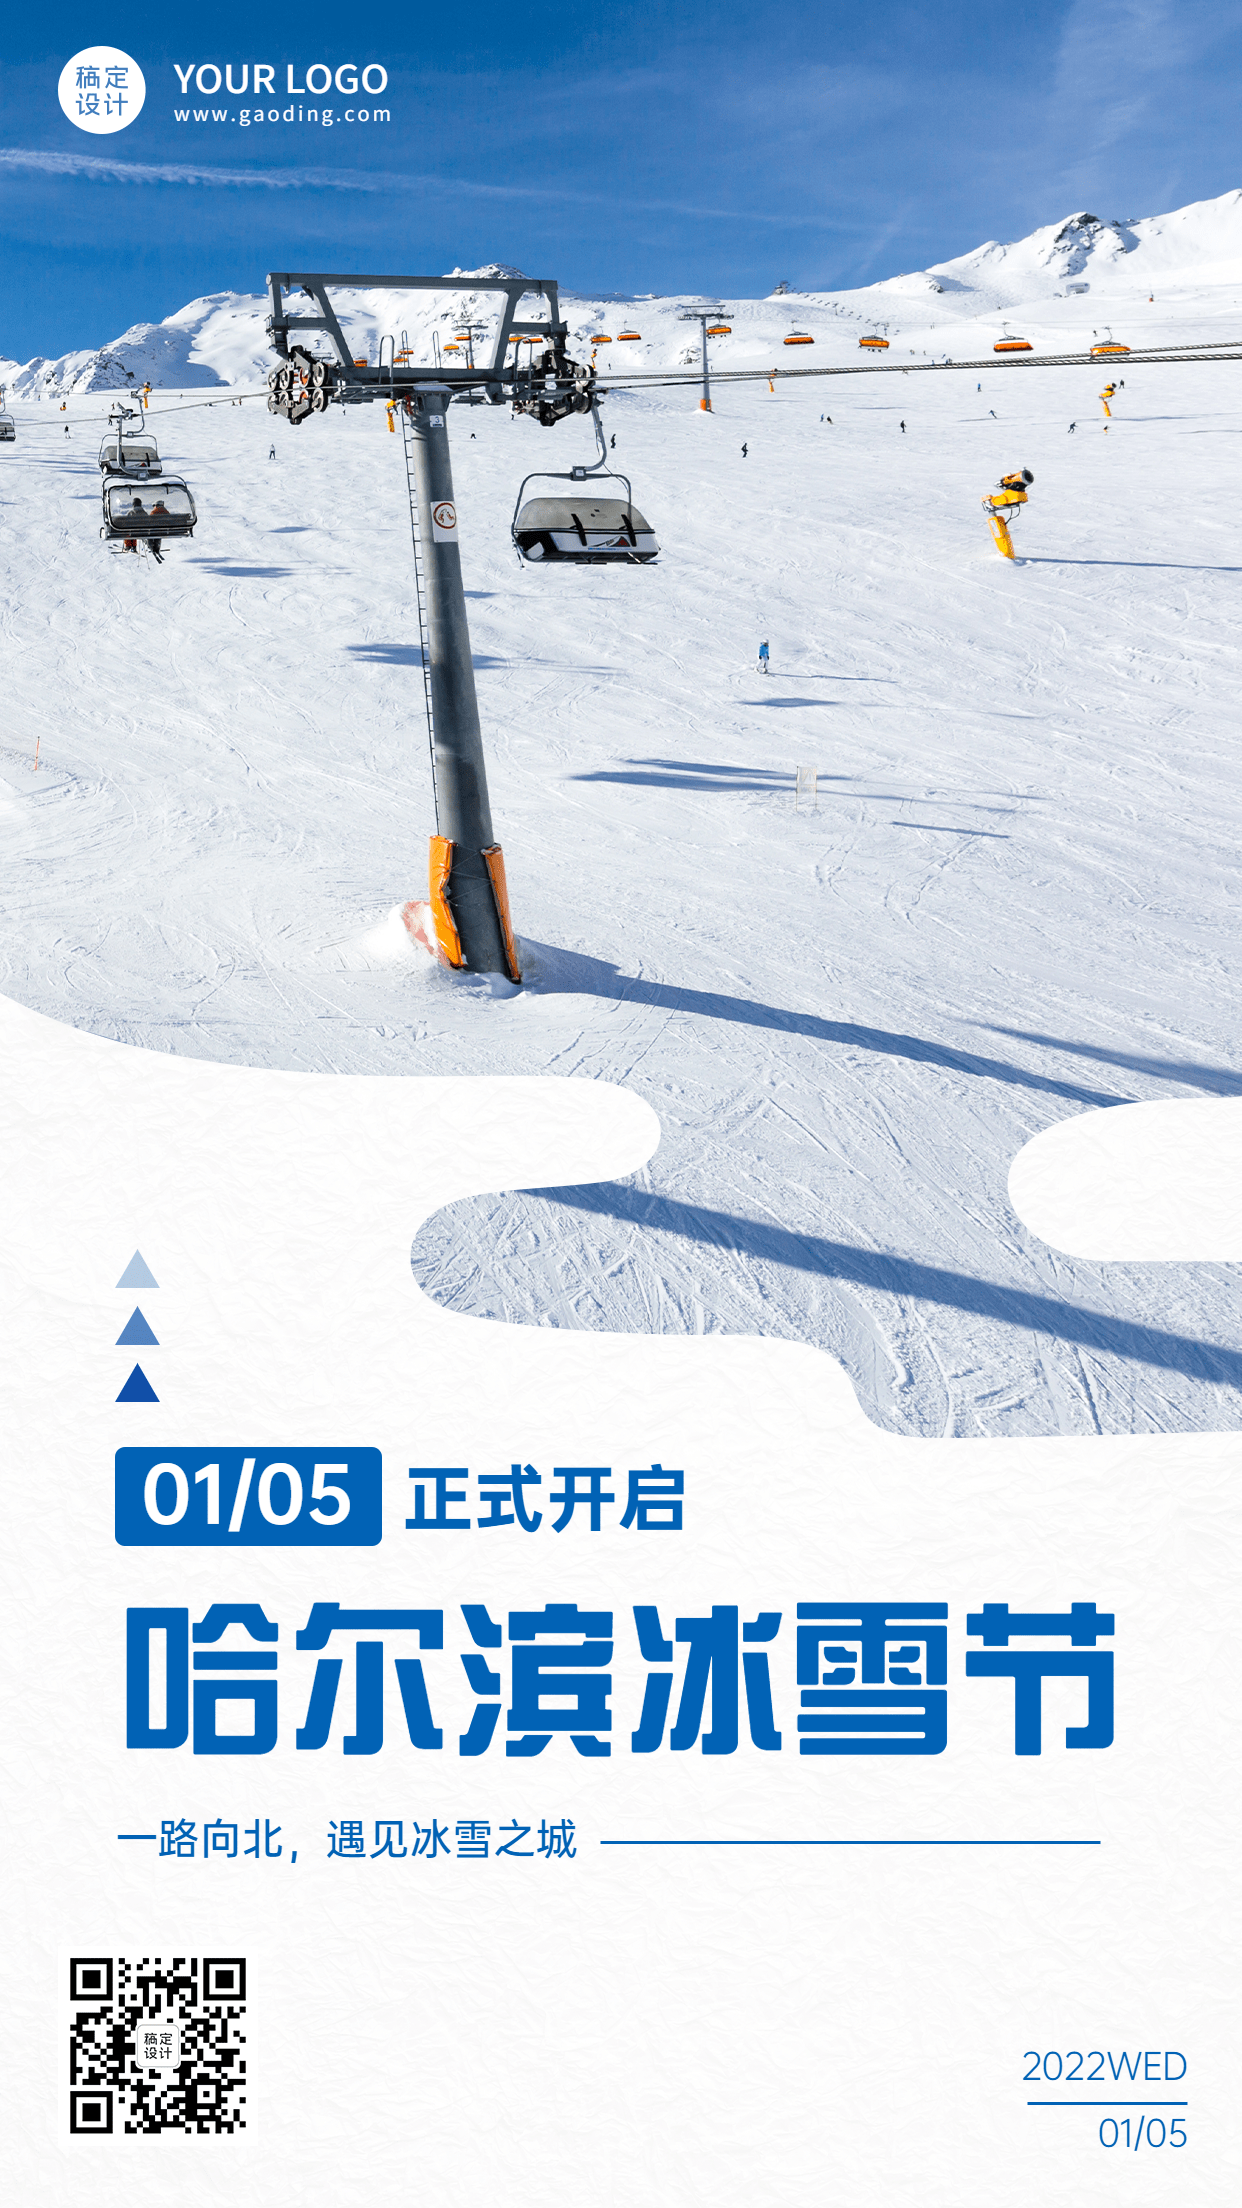 冬季冰雪旅游哈尔滨国际冰雪节活动宣传实景海报预览效果